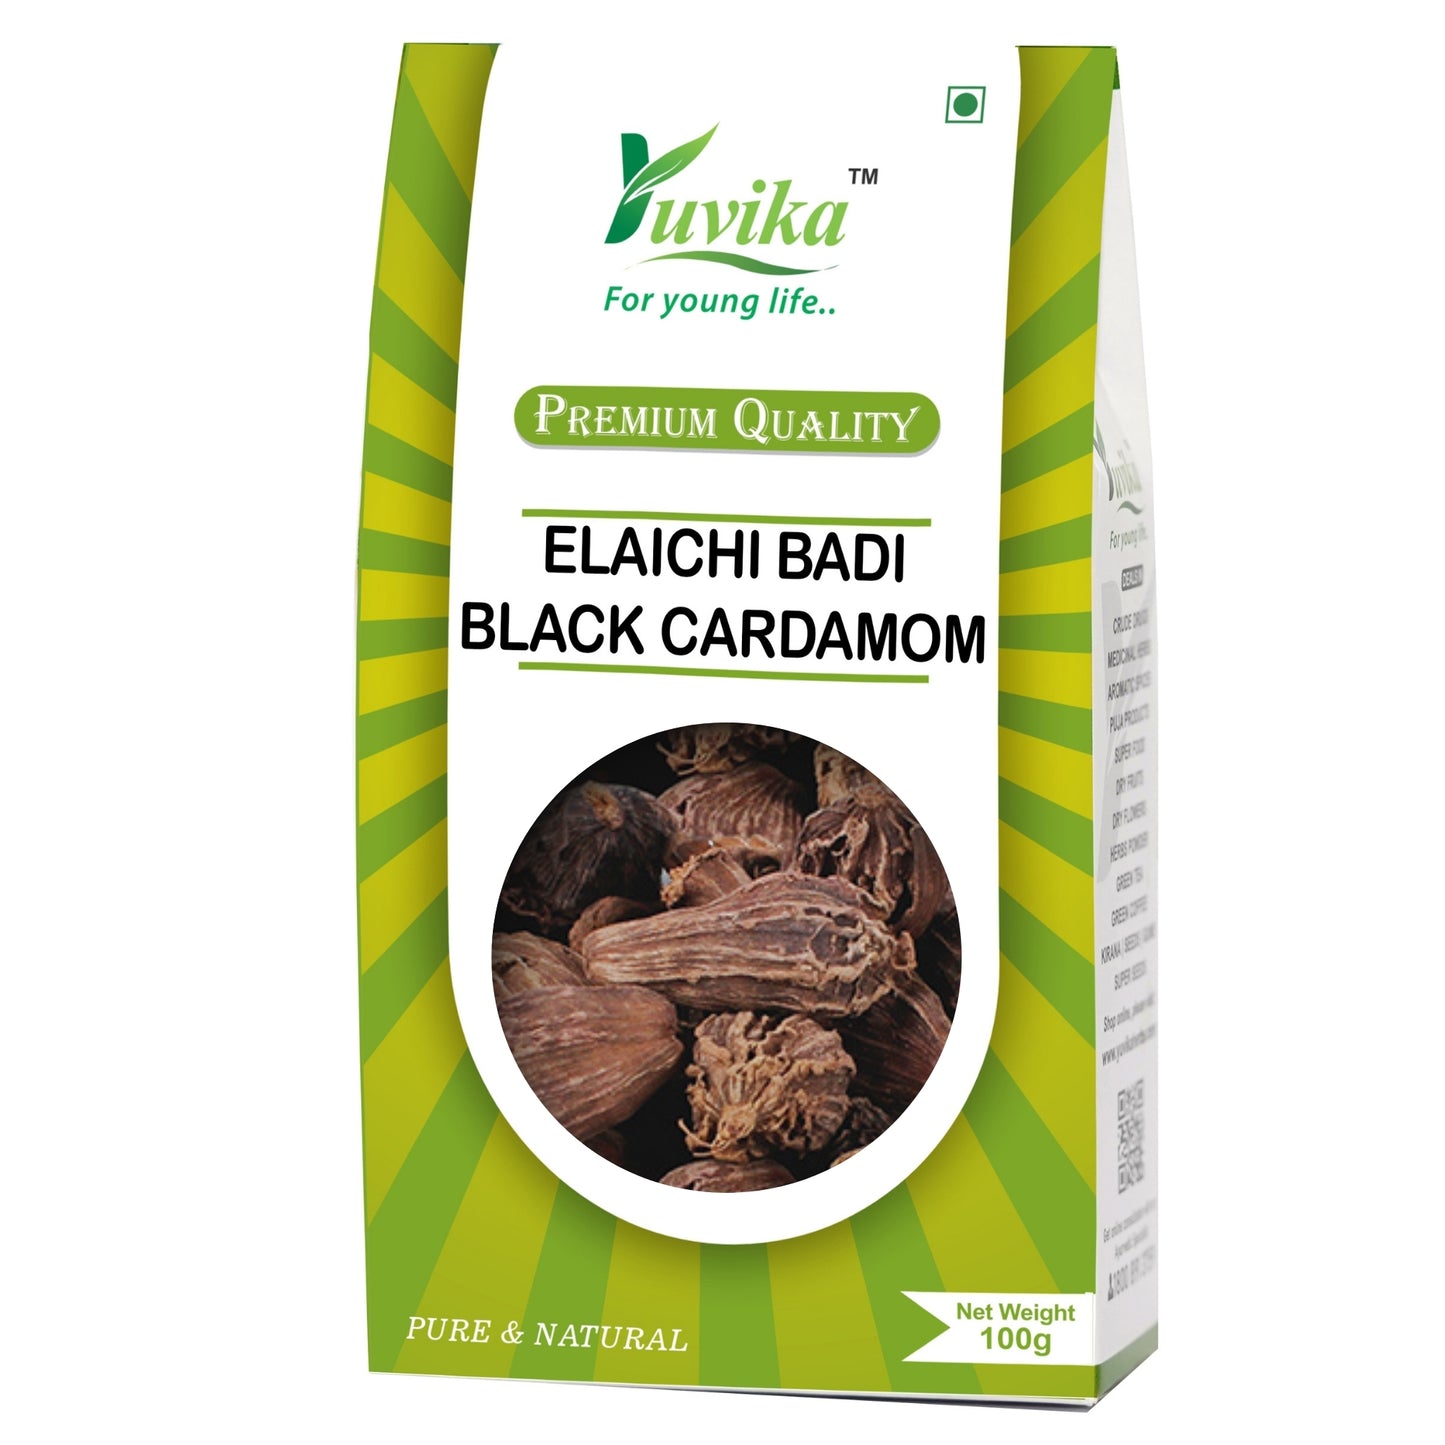 Elaichi Badi - Elachi Badi - Badi Elaichi - Elettaria cardamomum - Black Cardamom (100g)